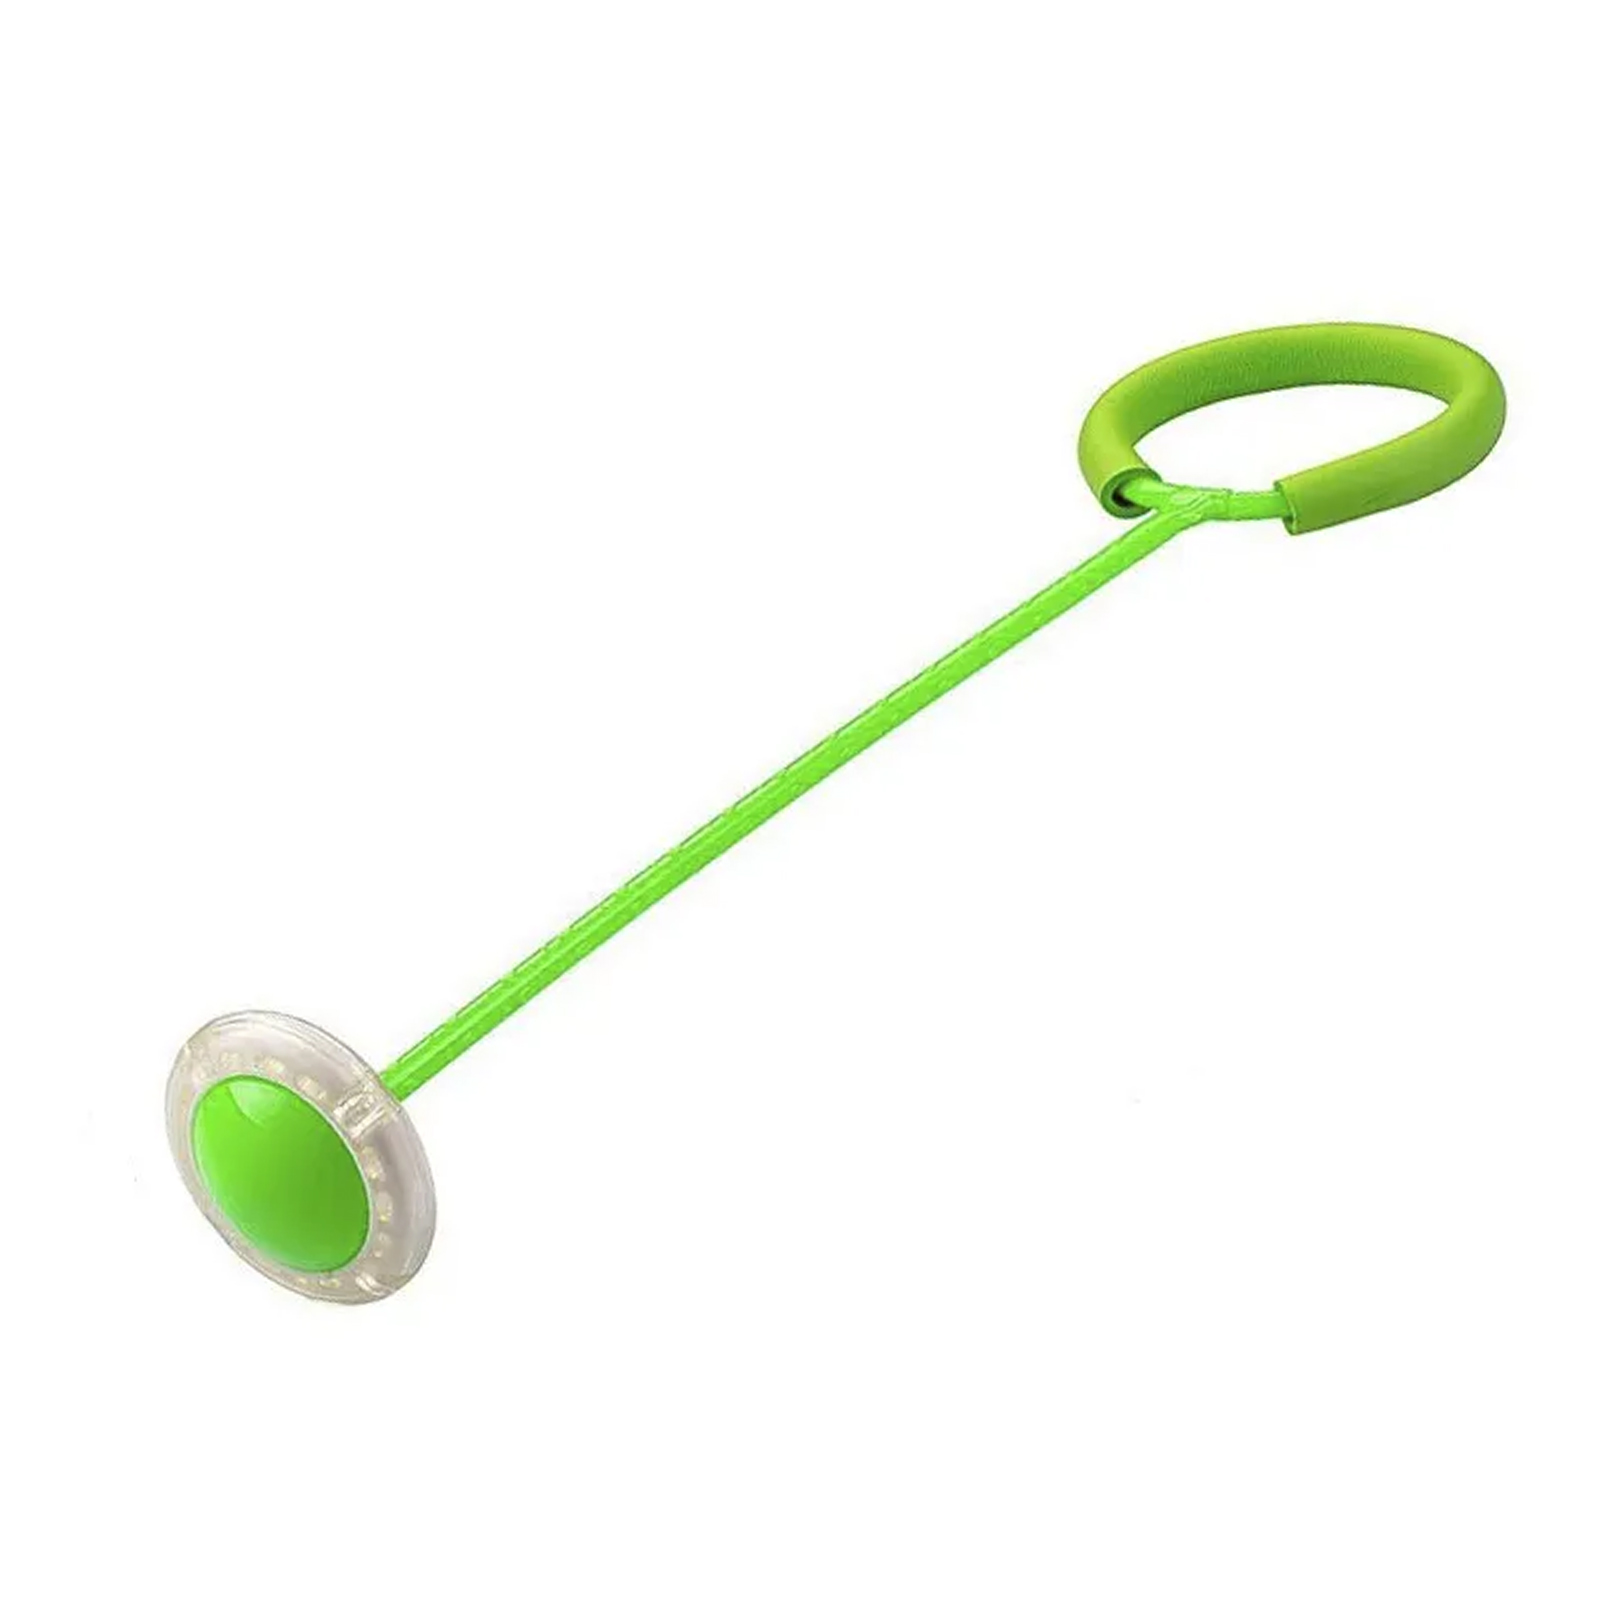 Нейроскакалка Market toys lab со светом на одну ногу зеленая нейроскакалка на одну ногу star желтая светящиеся колесо